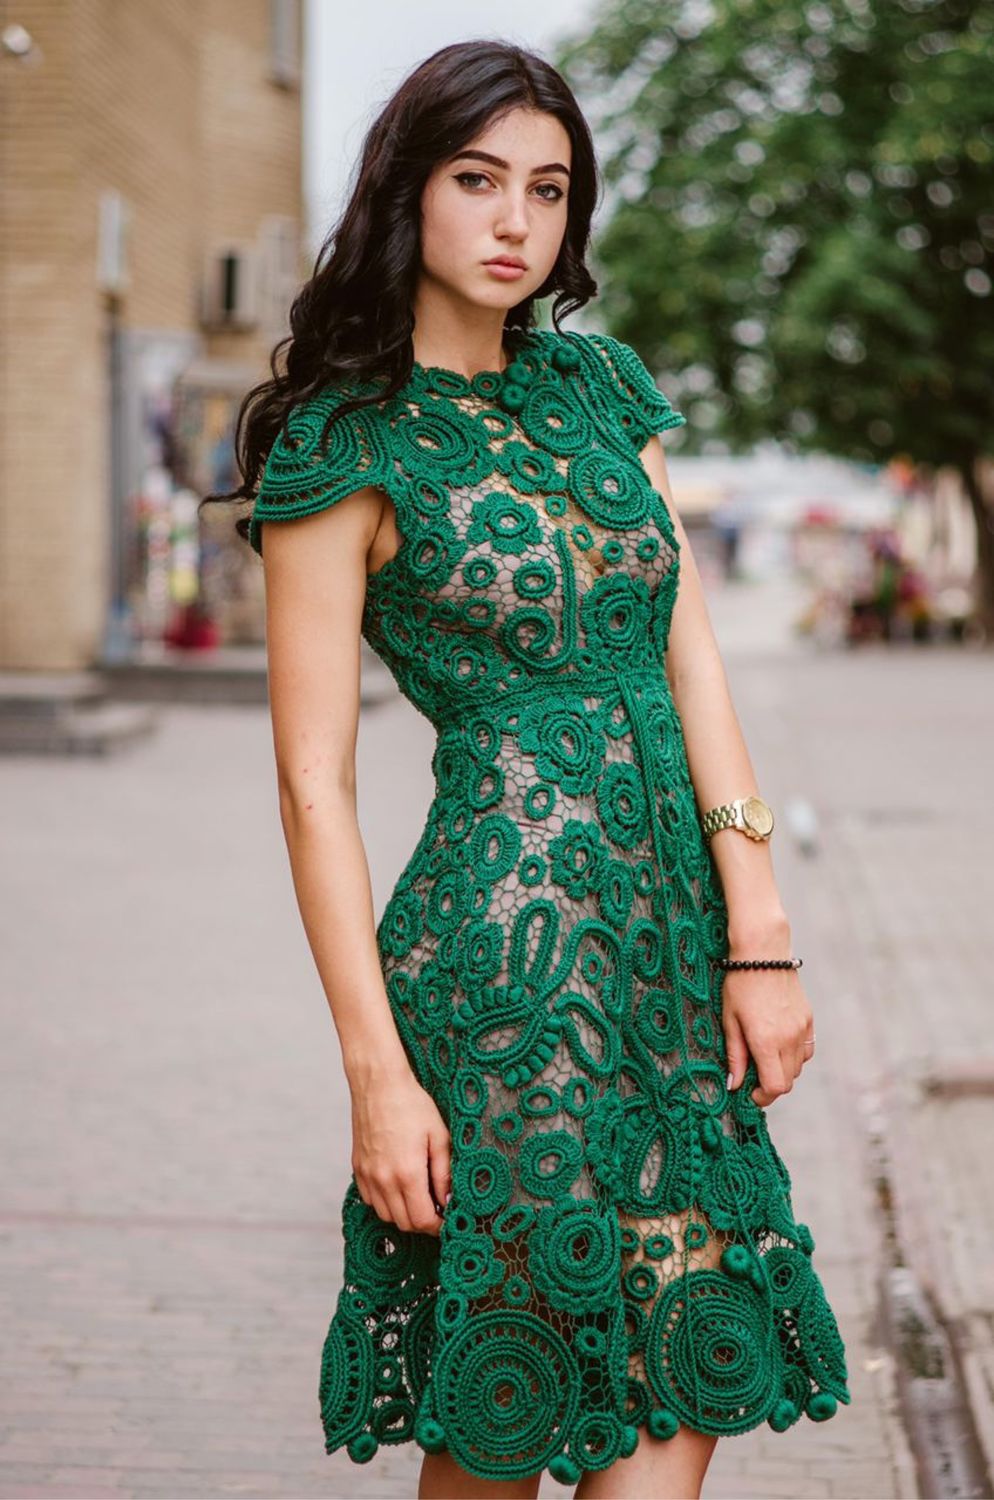 Зеленое кружевное платье